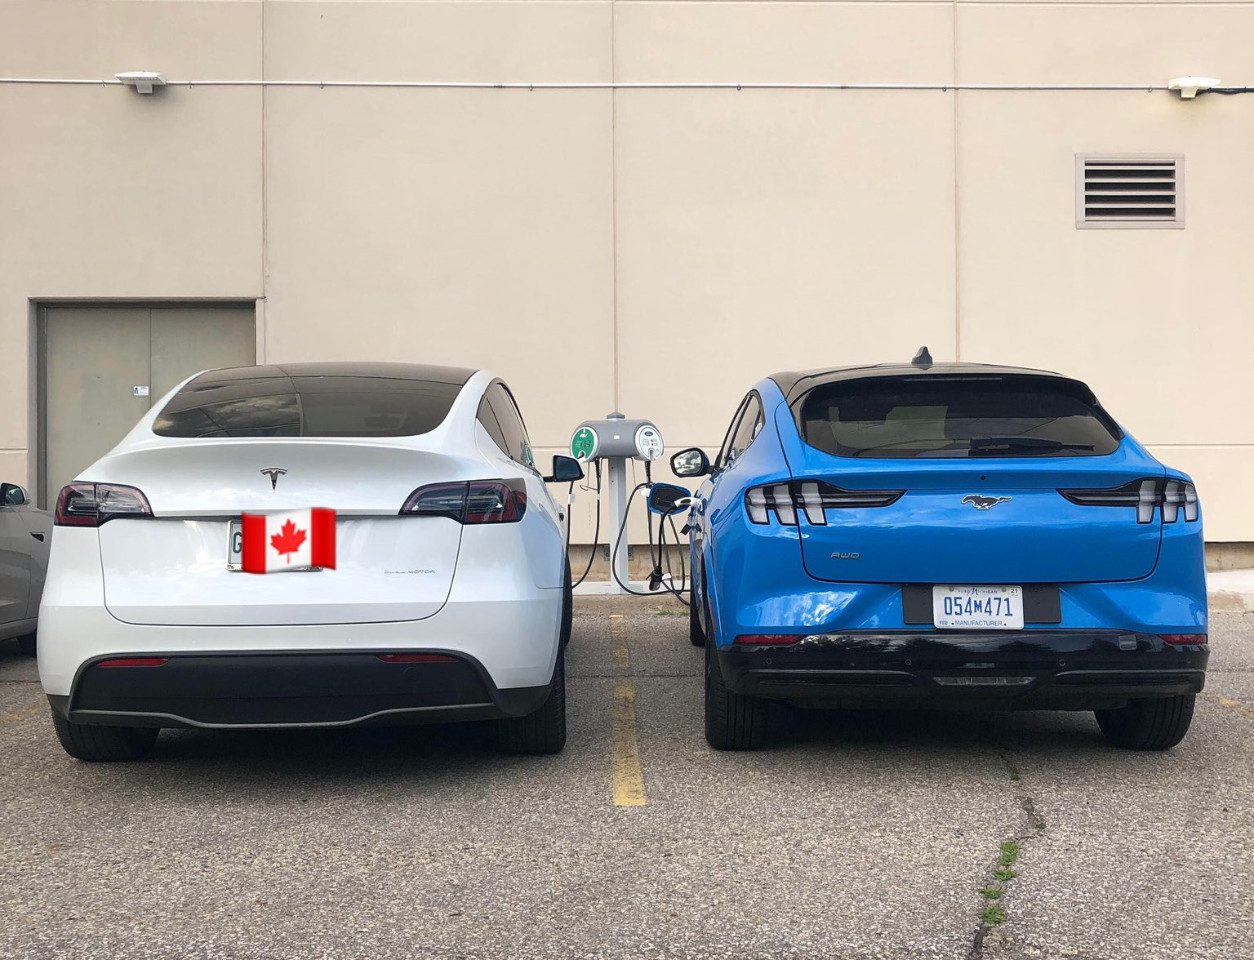 Confronto visivo: per la prima volta la nuova Ford Mustang Mach-E accanto alla Tesla Model Y